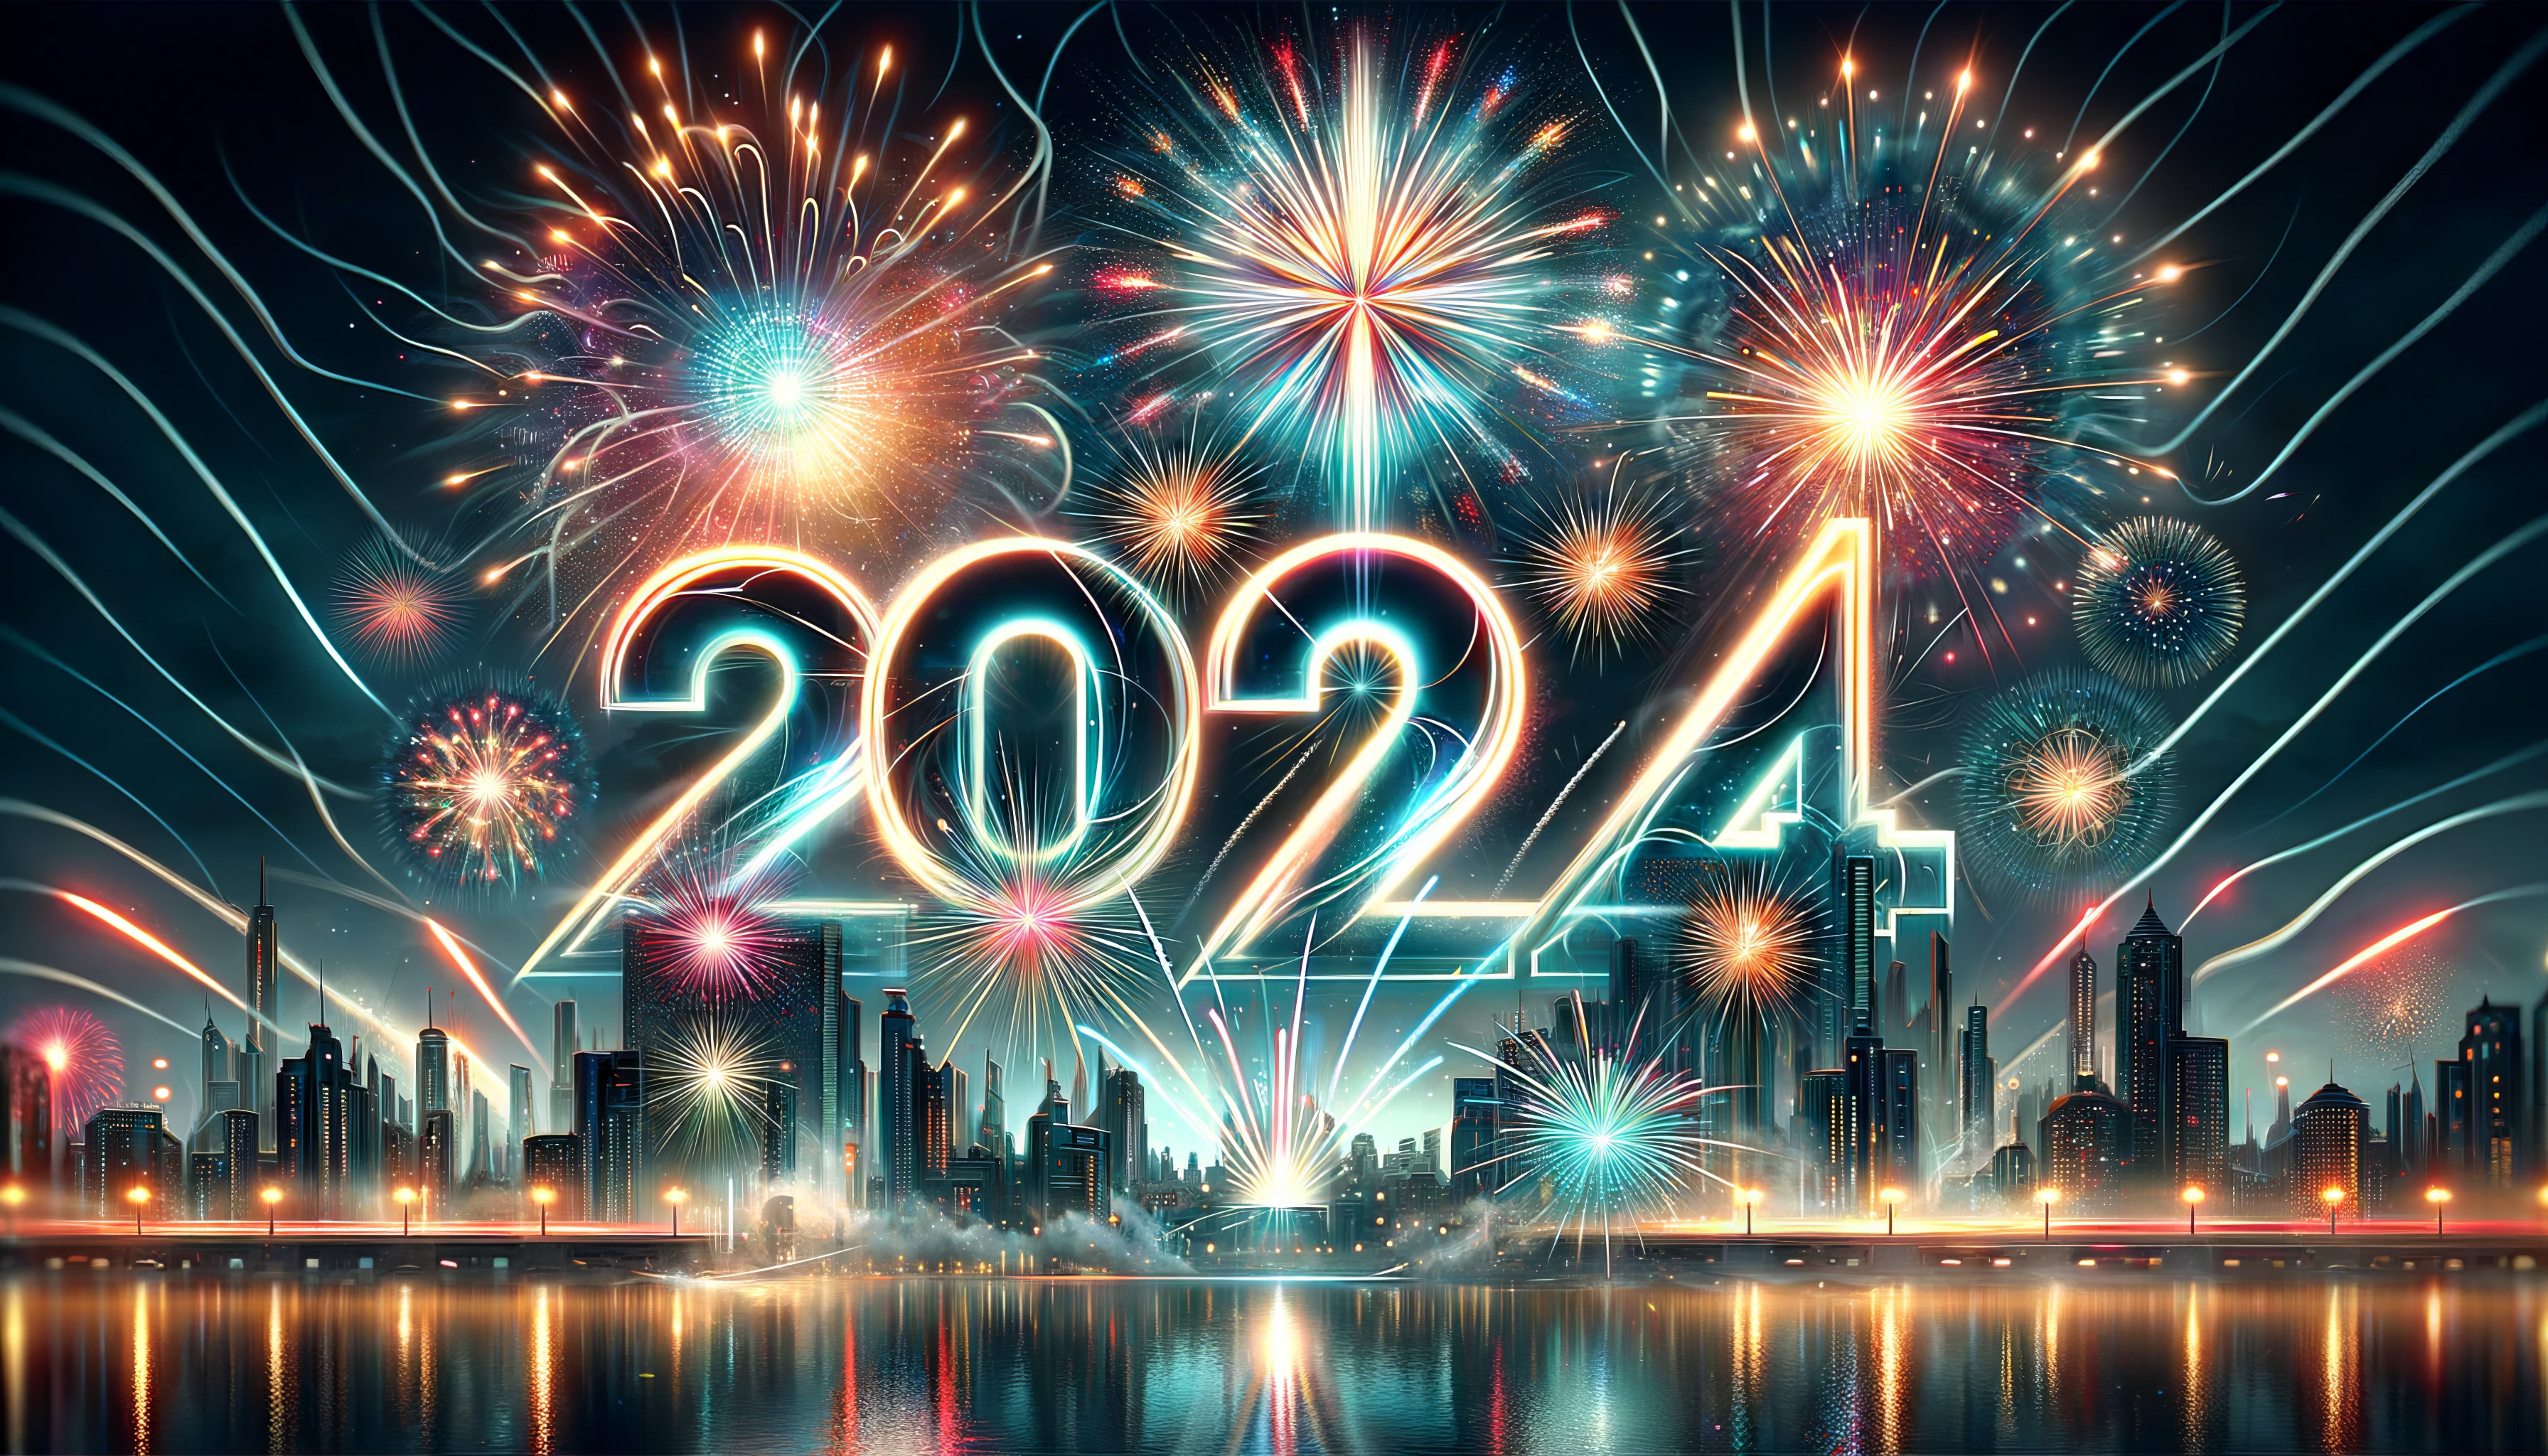 Vibrant 2024 fireworks display over city skyline HD wallpaper for desktop background.